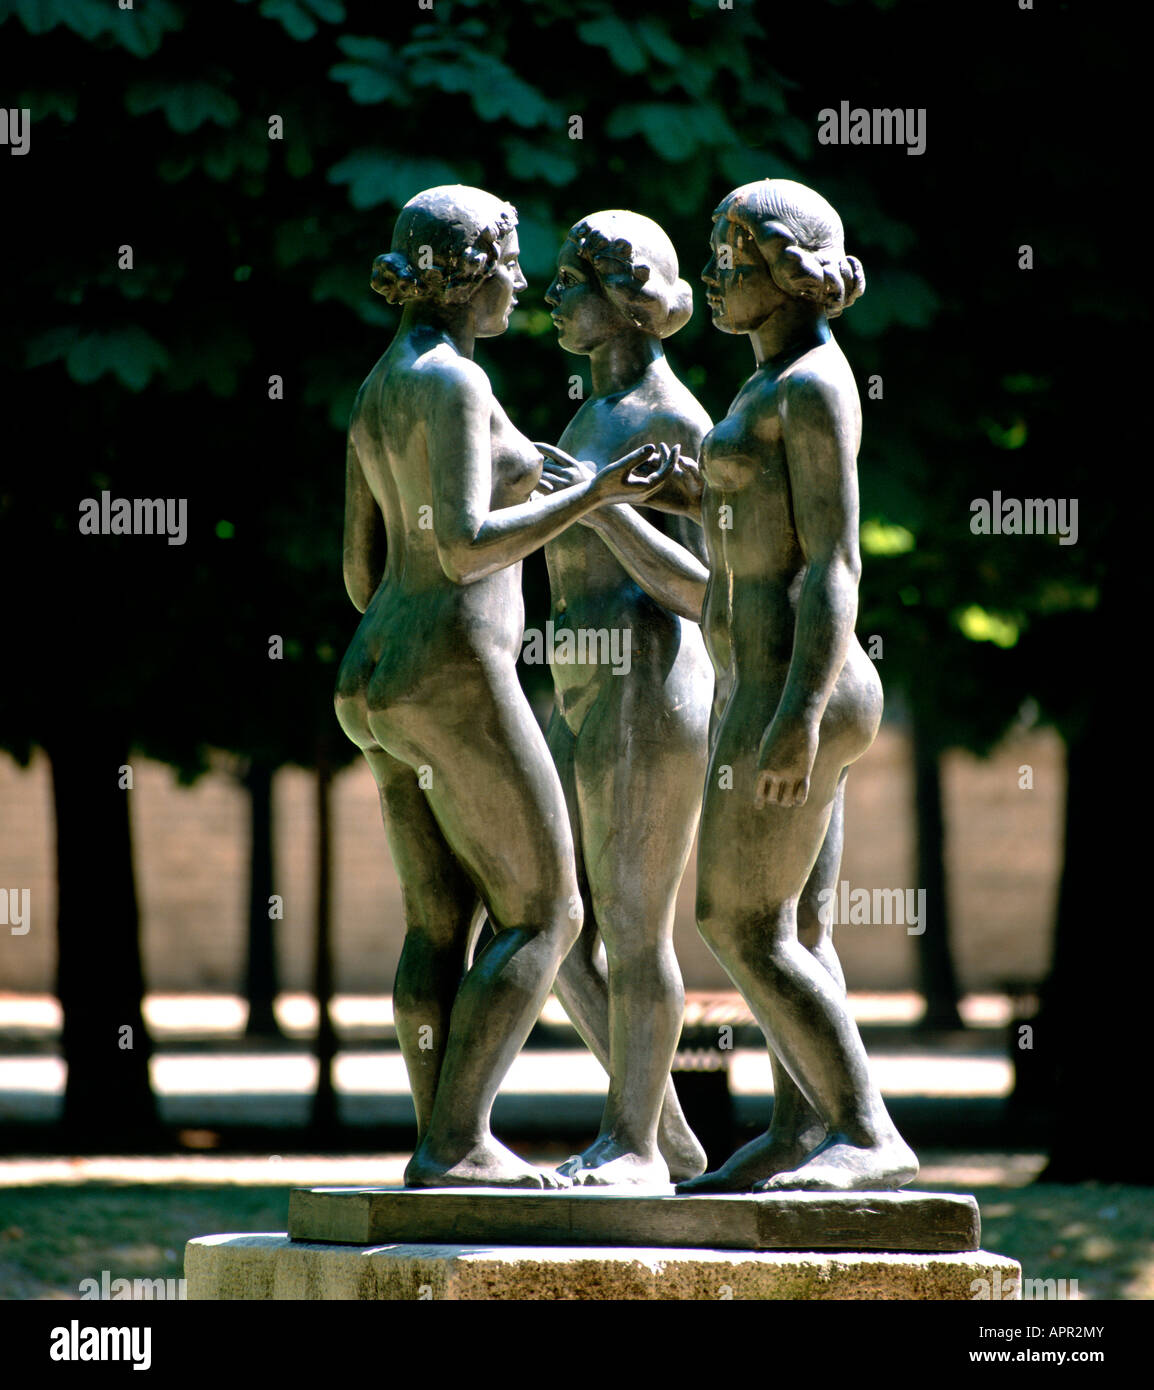 EU-FR Frankreich Region Ile de France Paris 1 Arrondissement der Jardin des Tuileries 3 Frauen Skulptur Medium format mehr Bilder auf Stockfoto